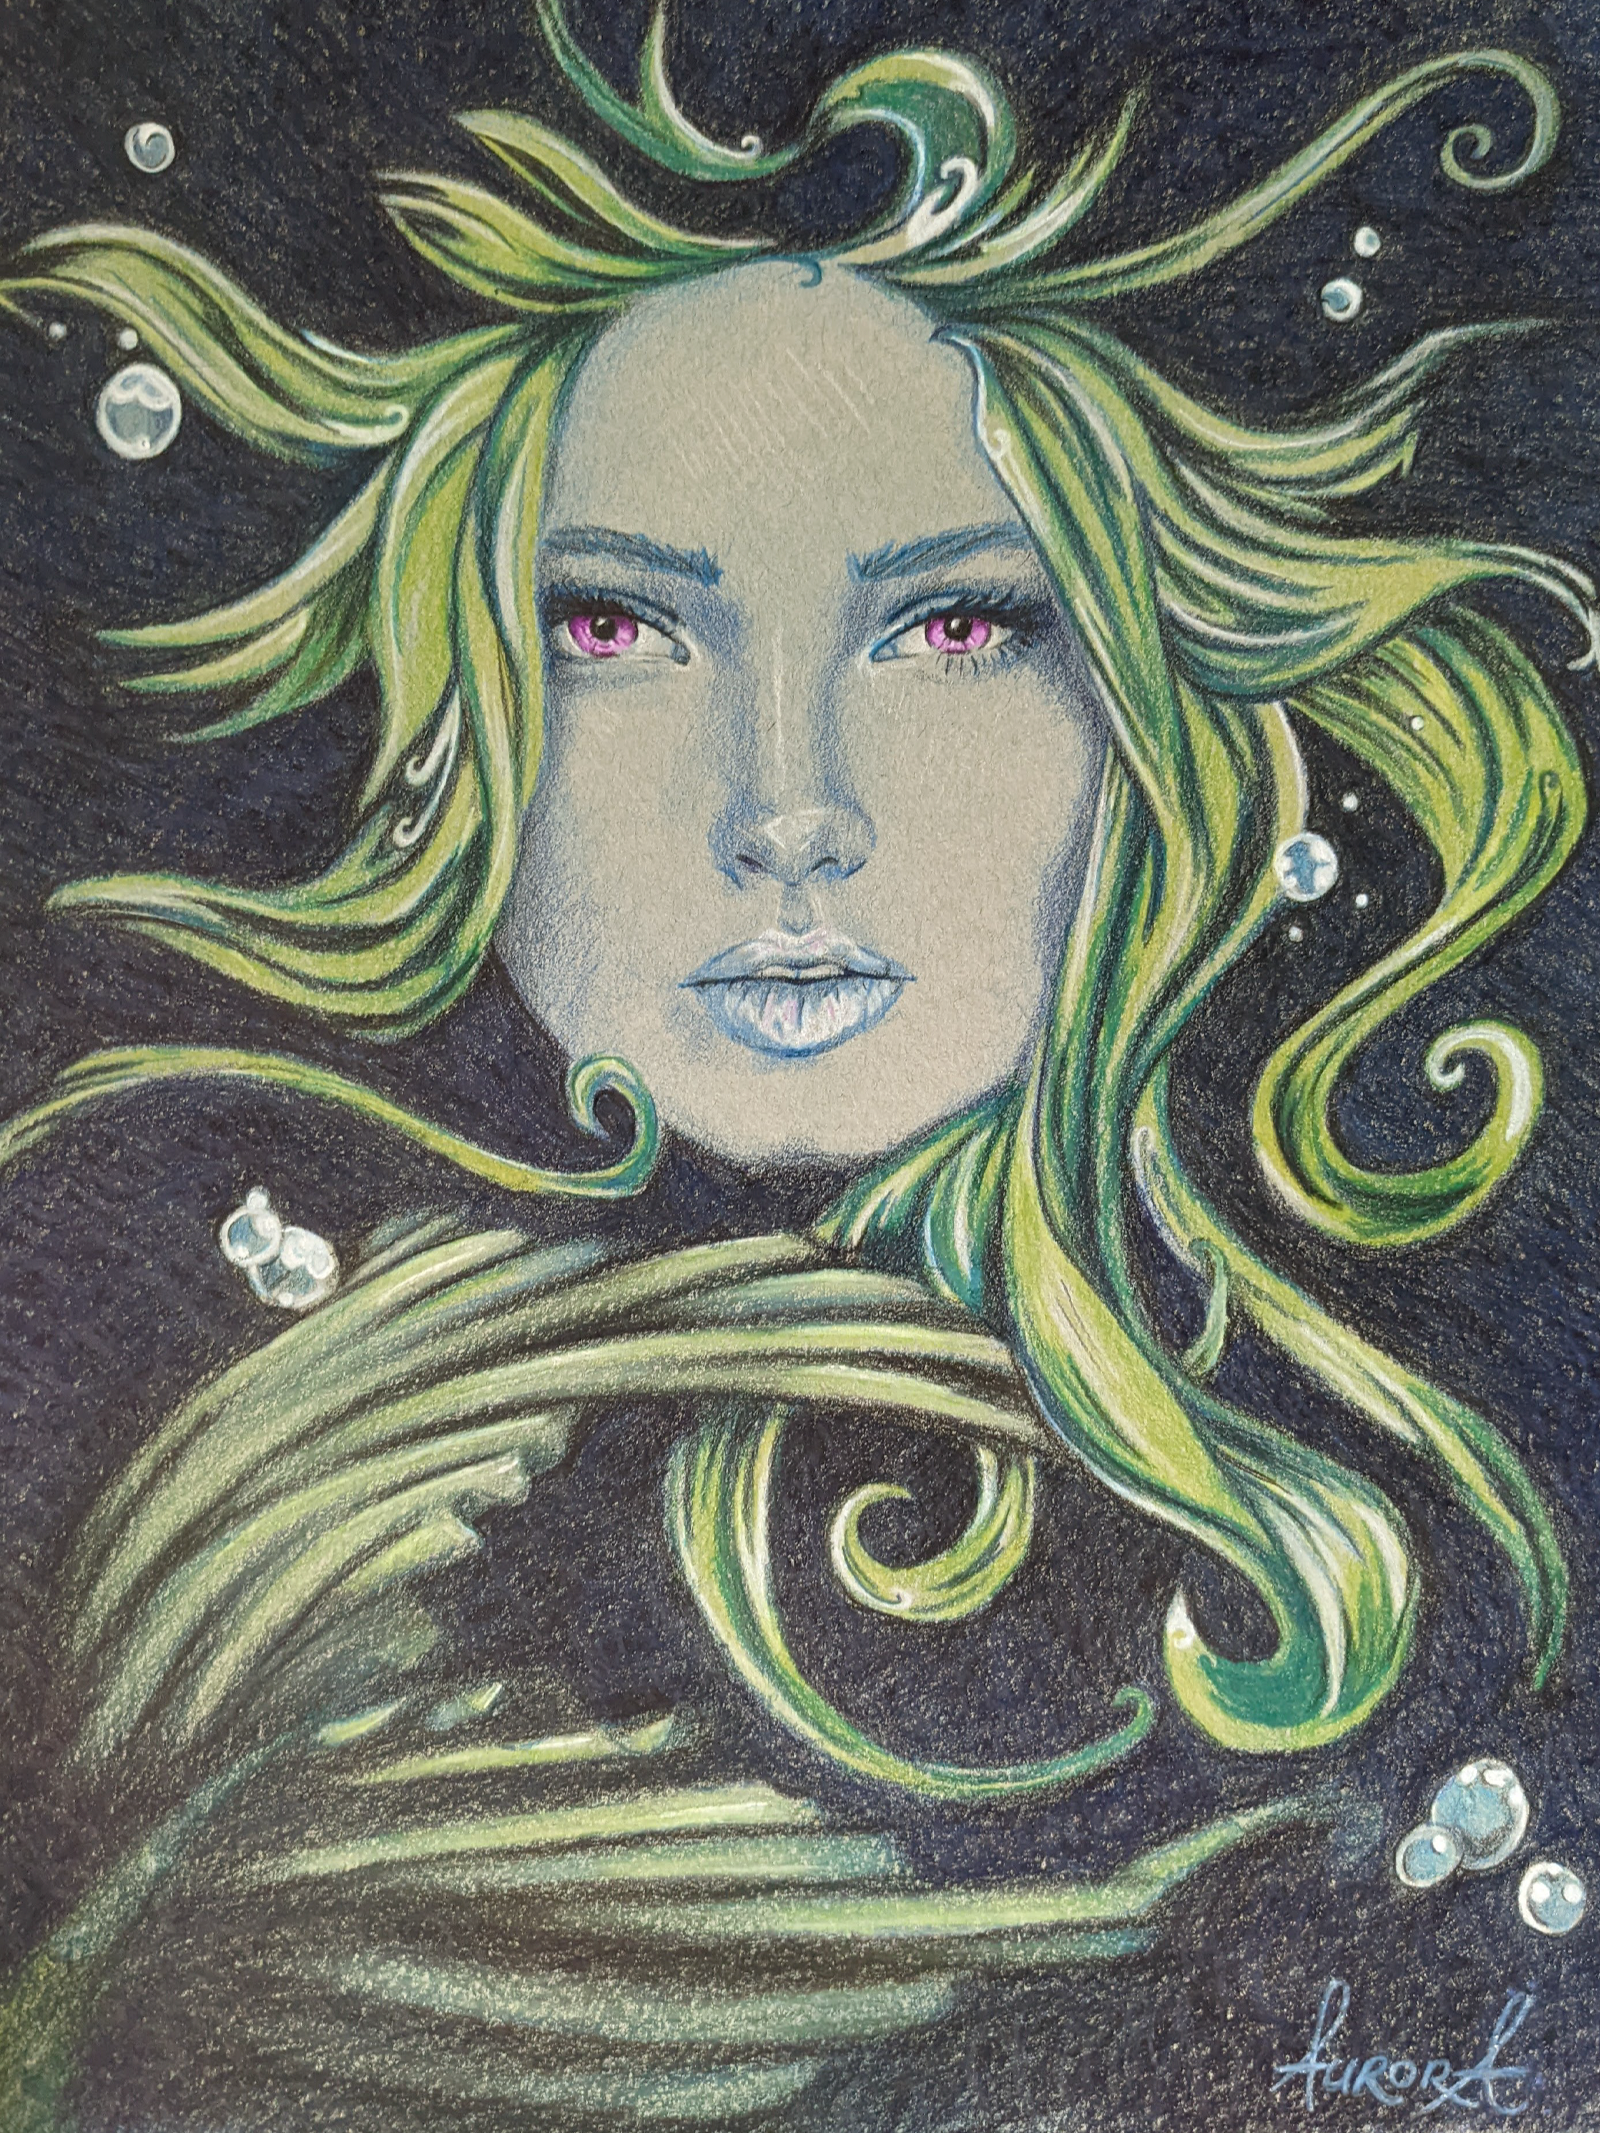 Mermaid illustration by Aurora Whittet Best